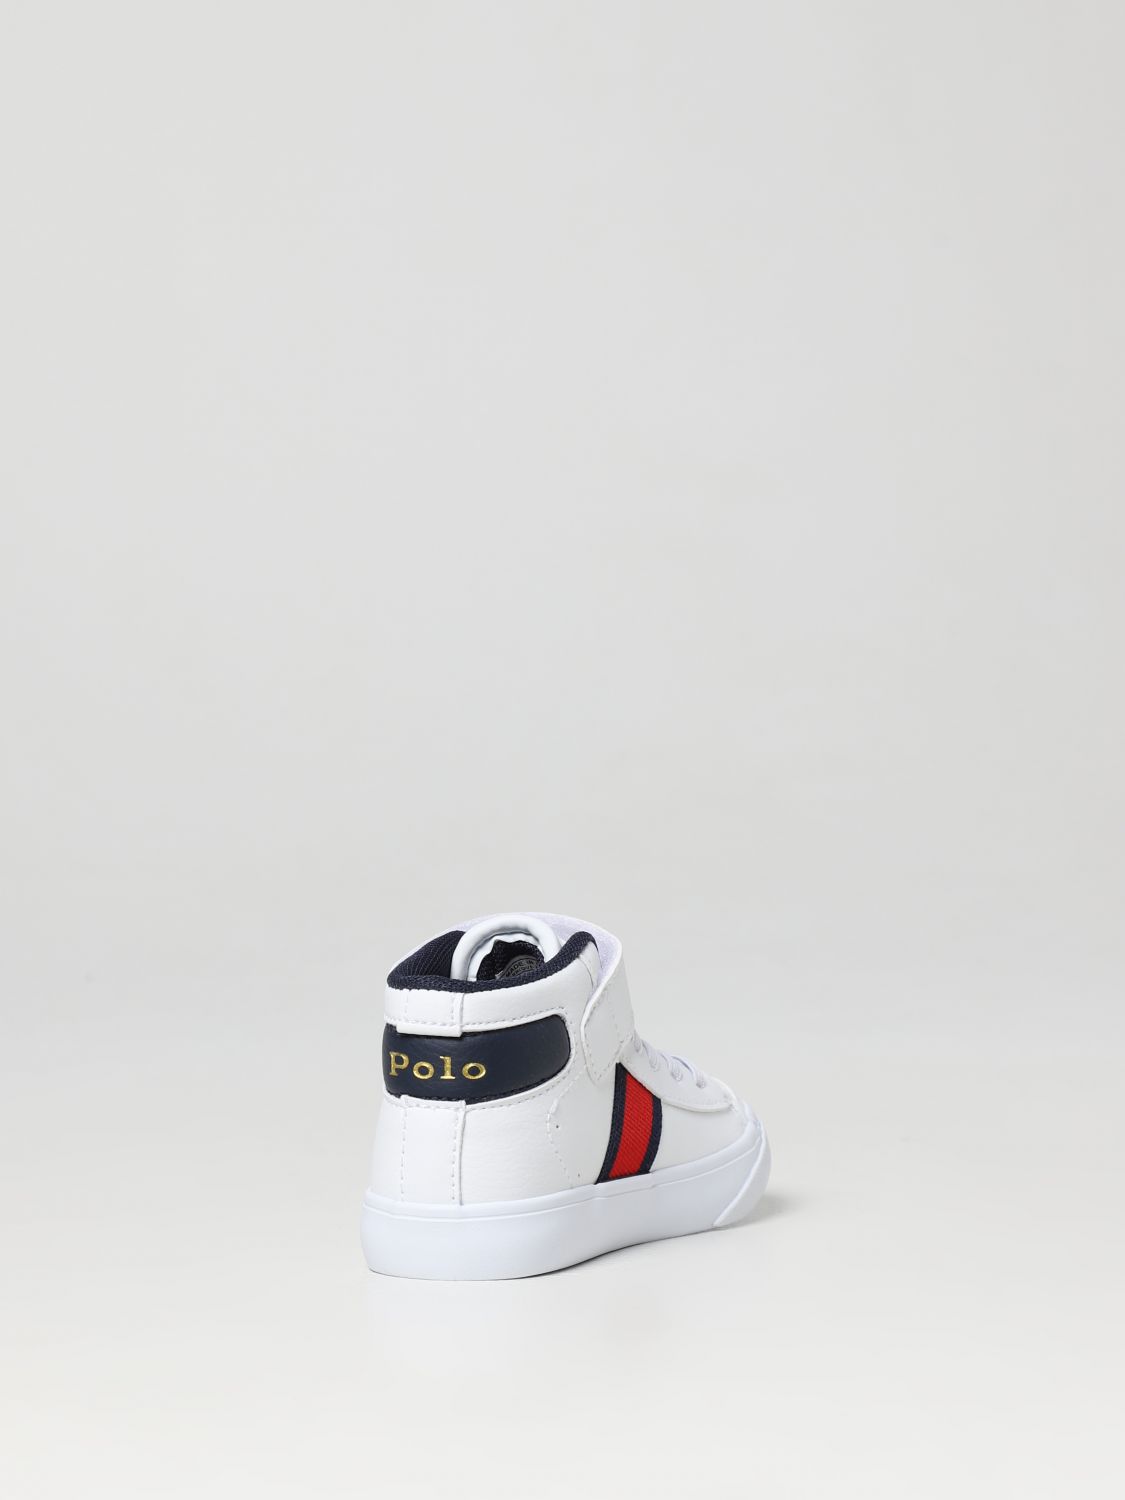 Schuhe Polo Ralph Lauren: Polo Ralph Lauren Jungen Schuhe weiß 3